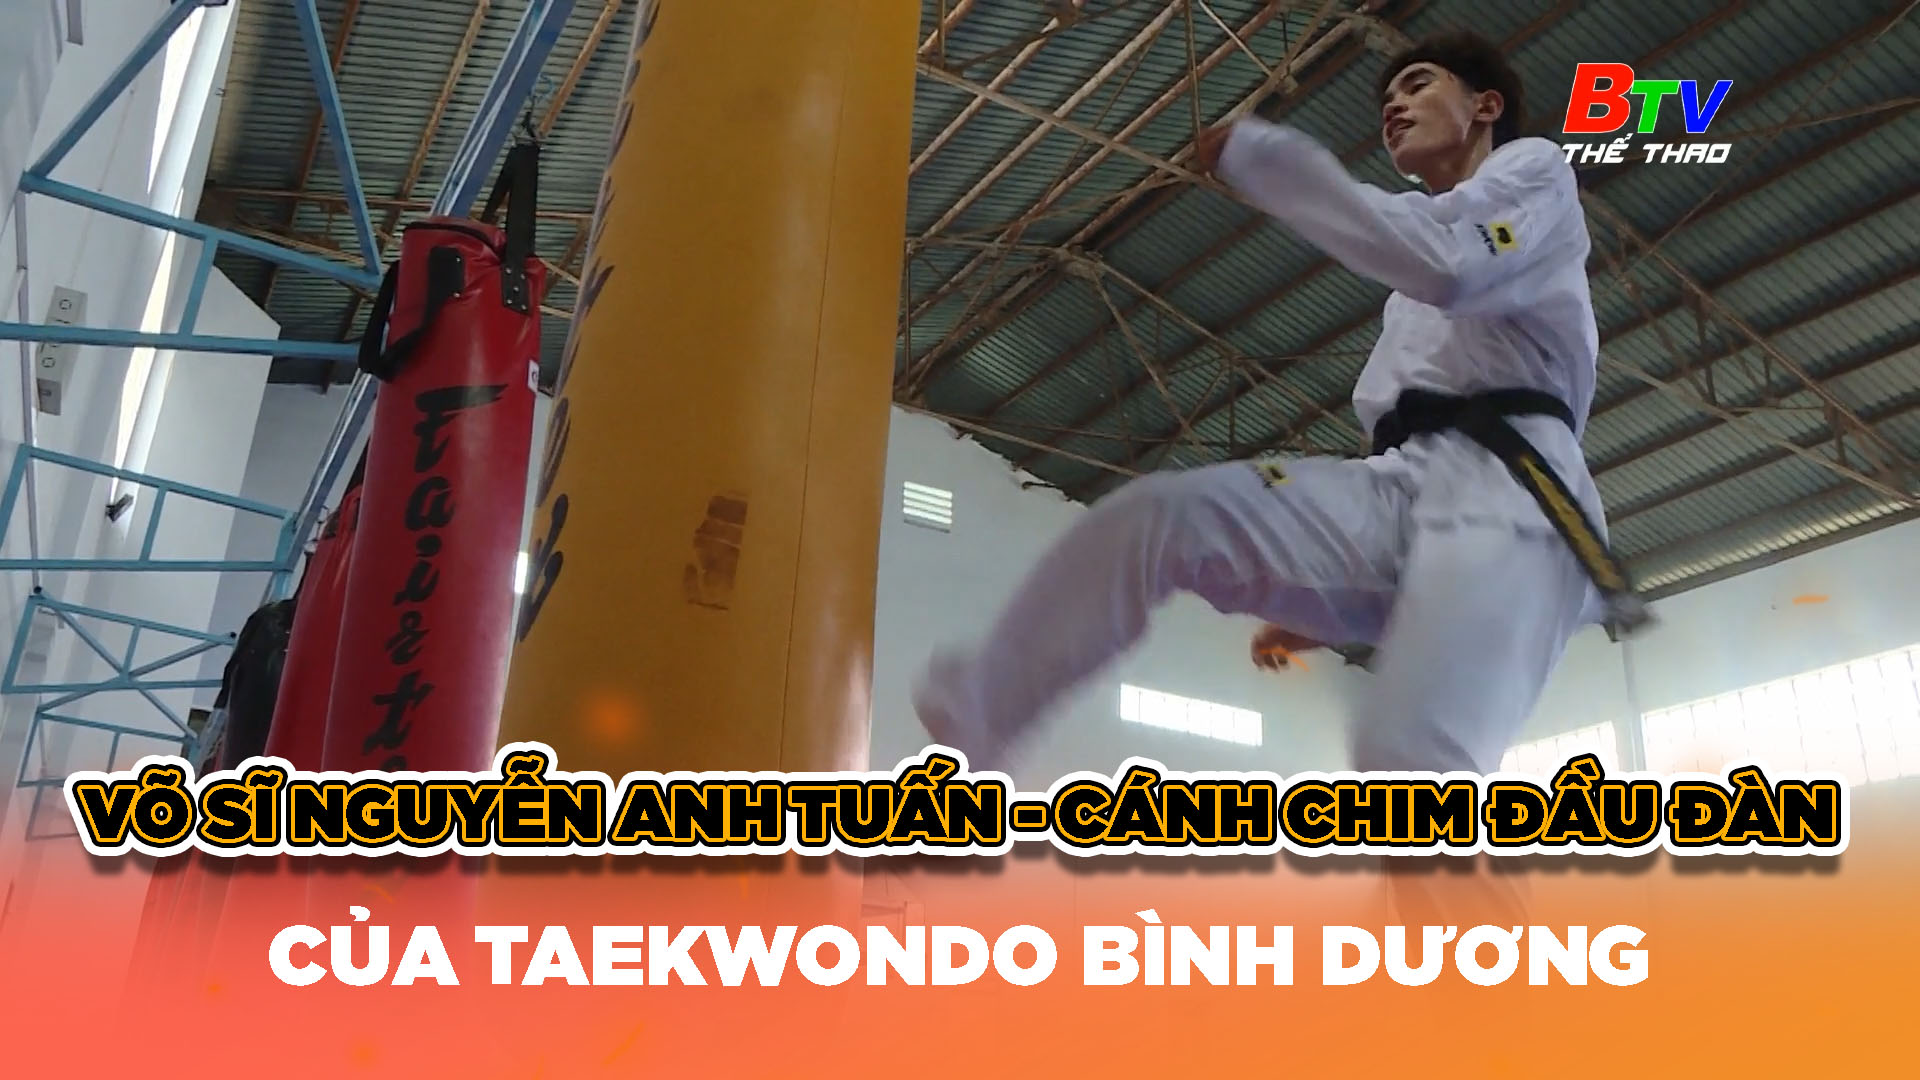 Võ sĩ Nguyễn Anh Tuấn – Cánh chim đầu đàn của Taekwondo Bình Dương